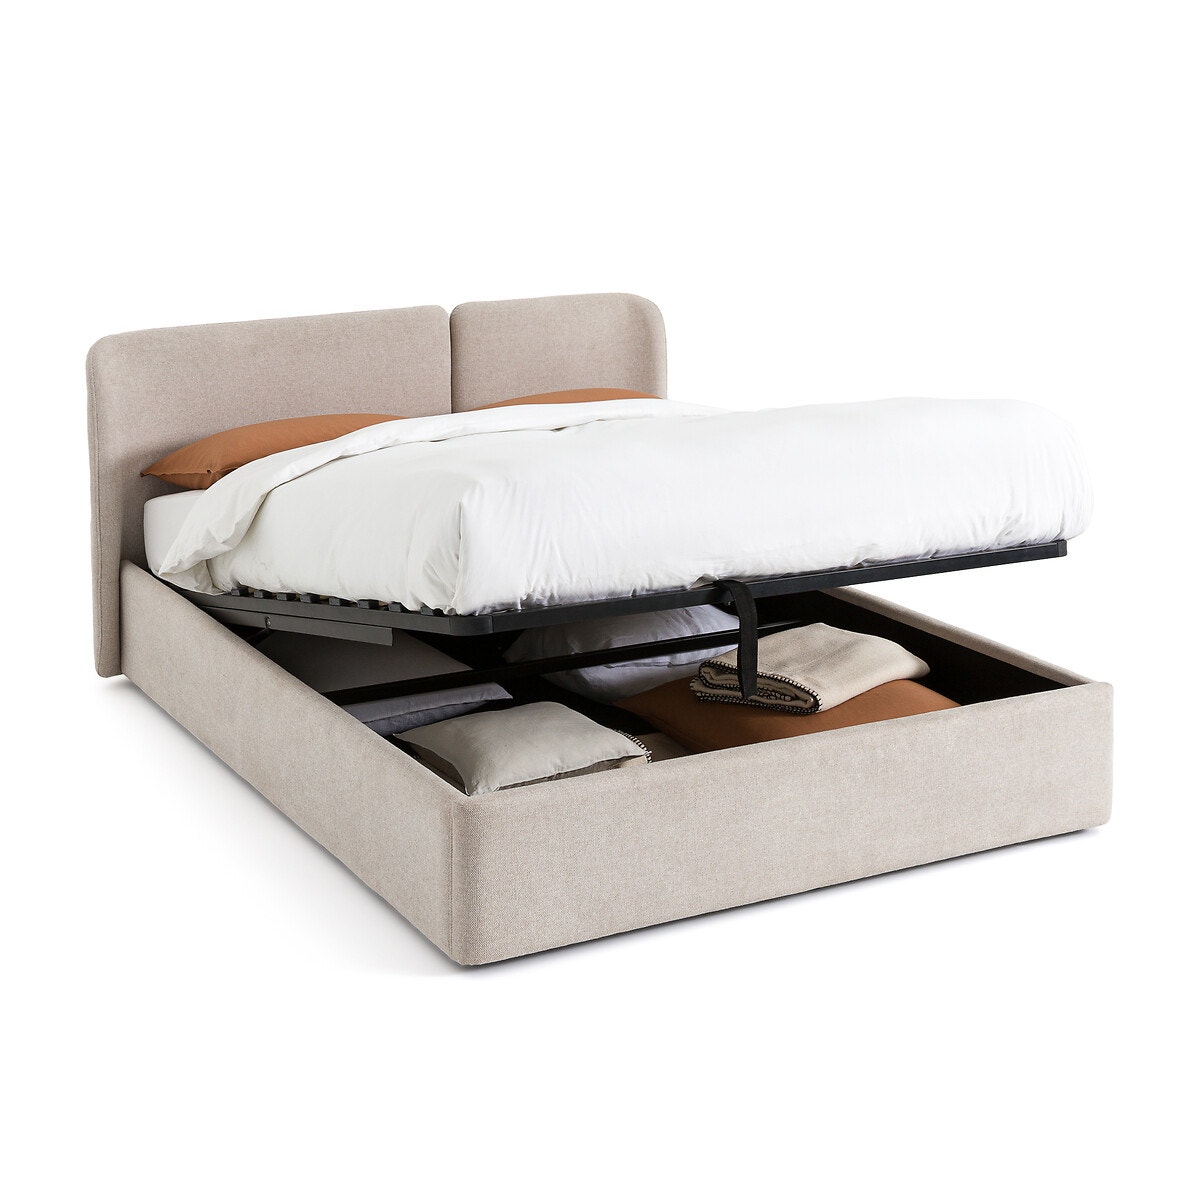 Κρεβάτι με αποθηκευτικό χώρο και ανακλινόμενο τελάρο με τάβλες Μ166xΠ204xΥ92cm